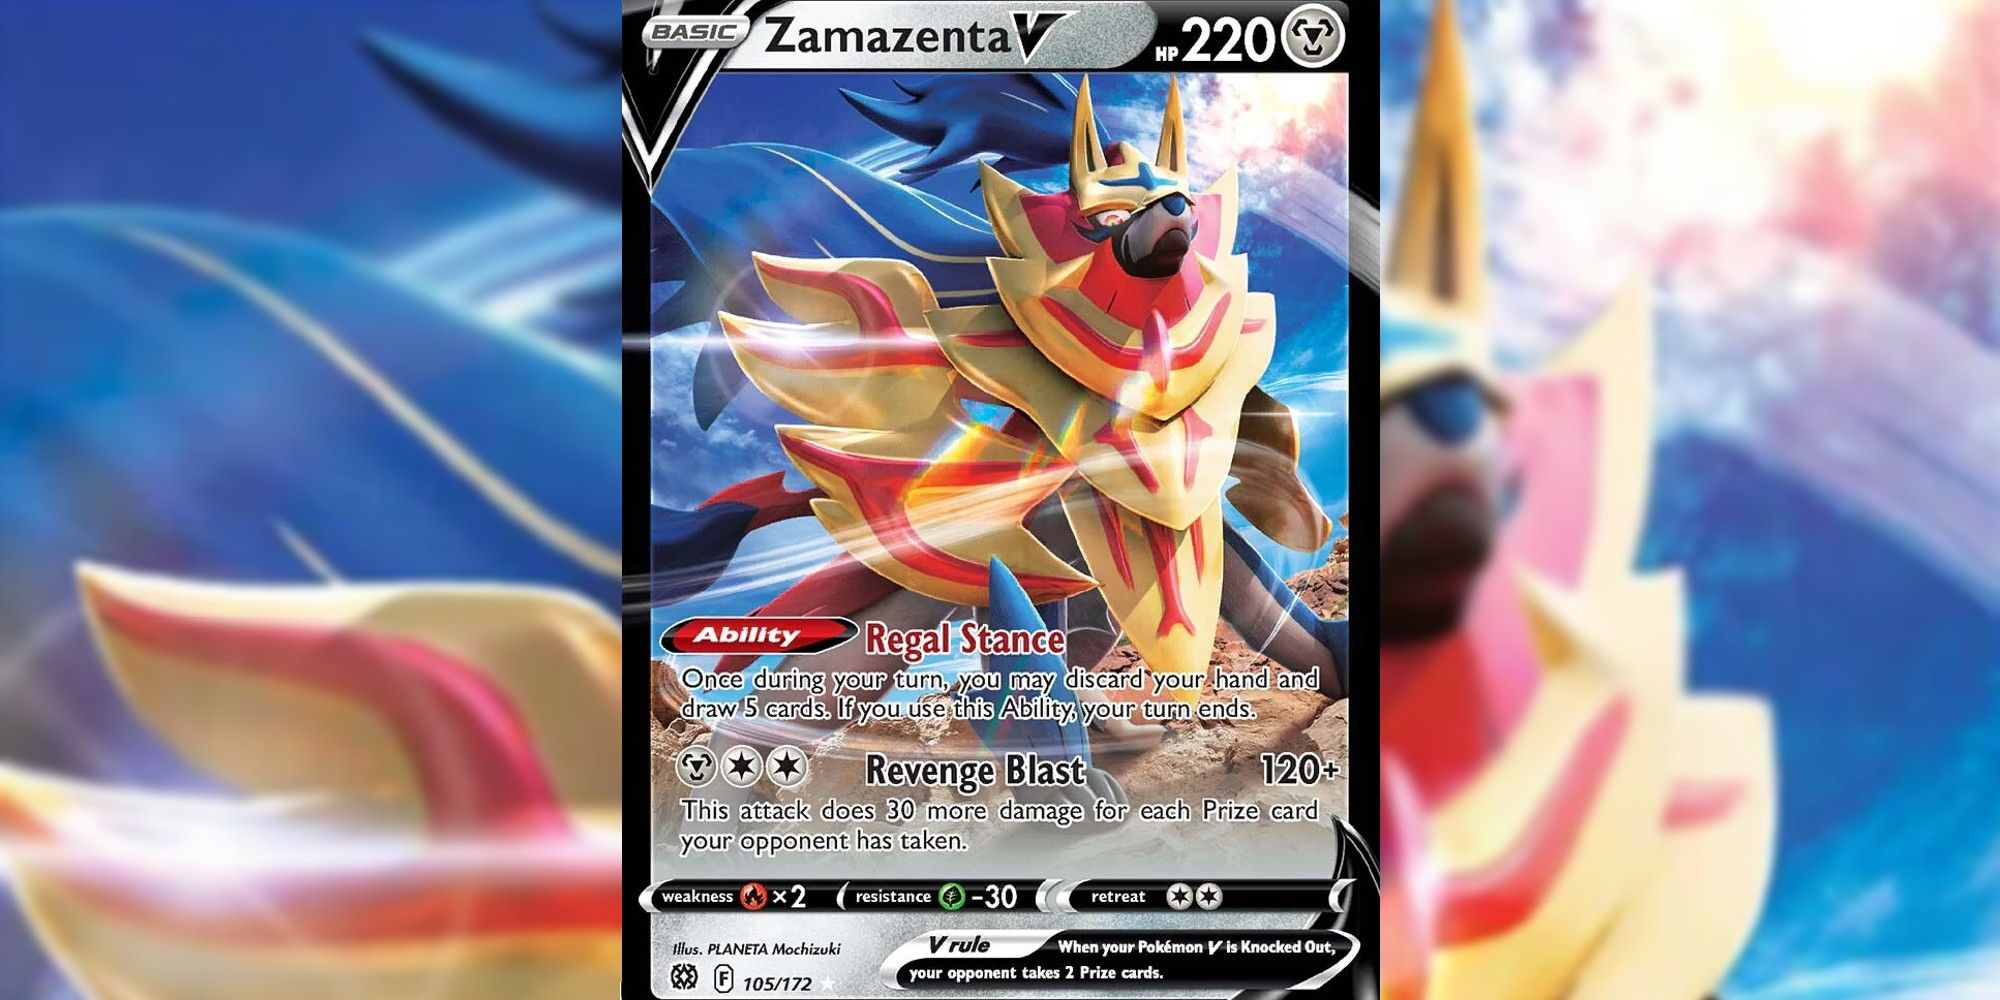 Zamazenta V card with blurred background